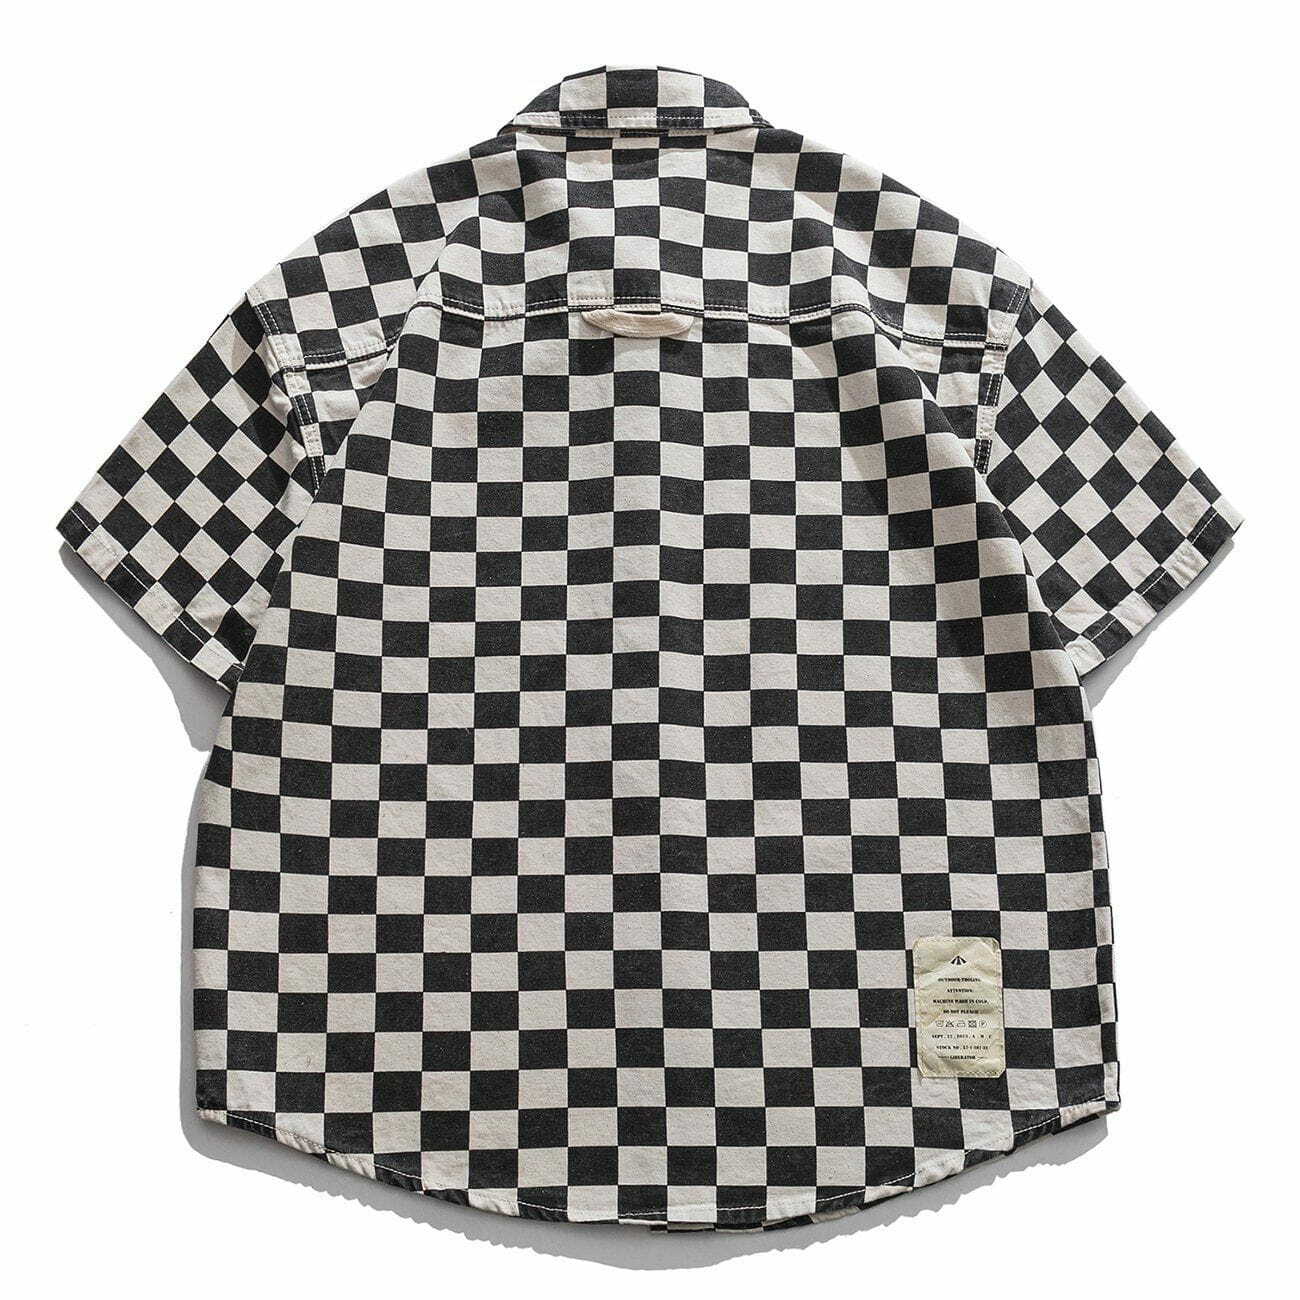 youthful retro short sleeve shirt edgy lattice decal design 2588